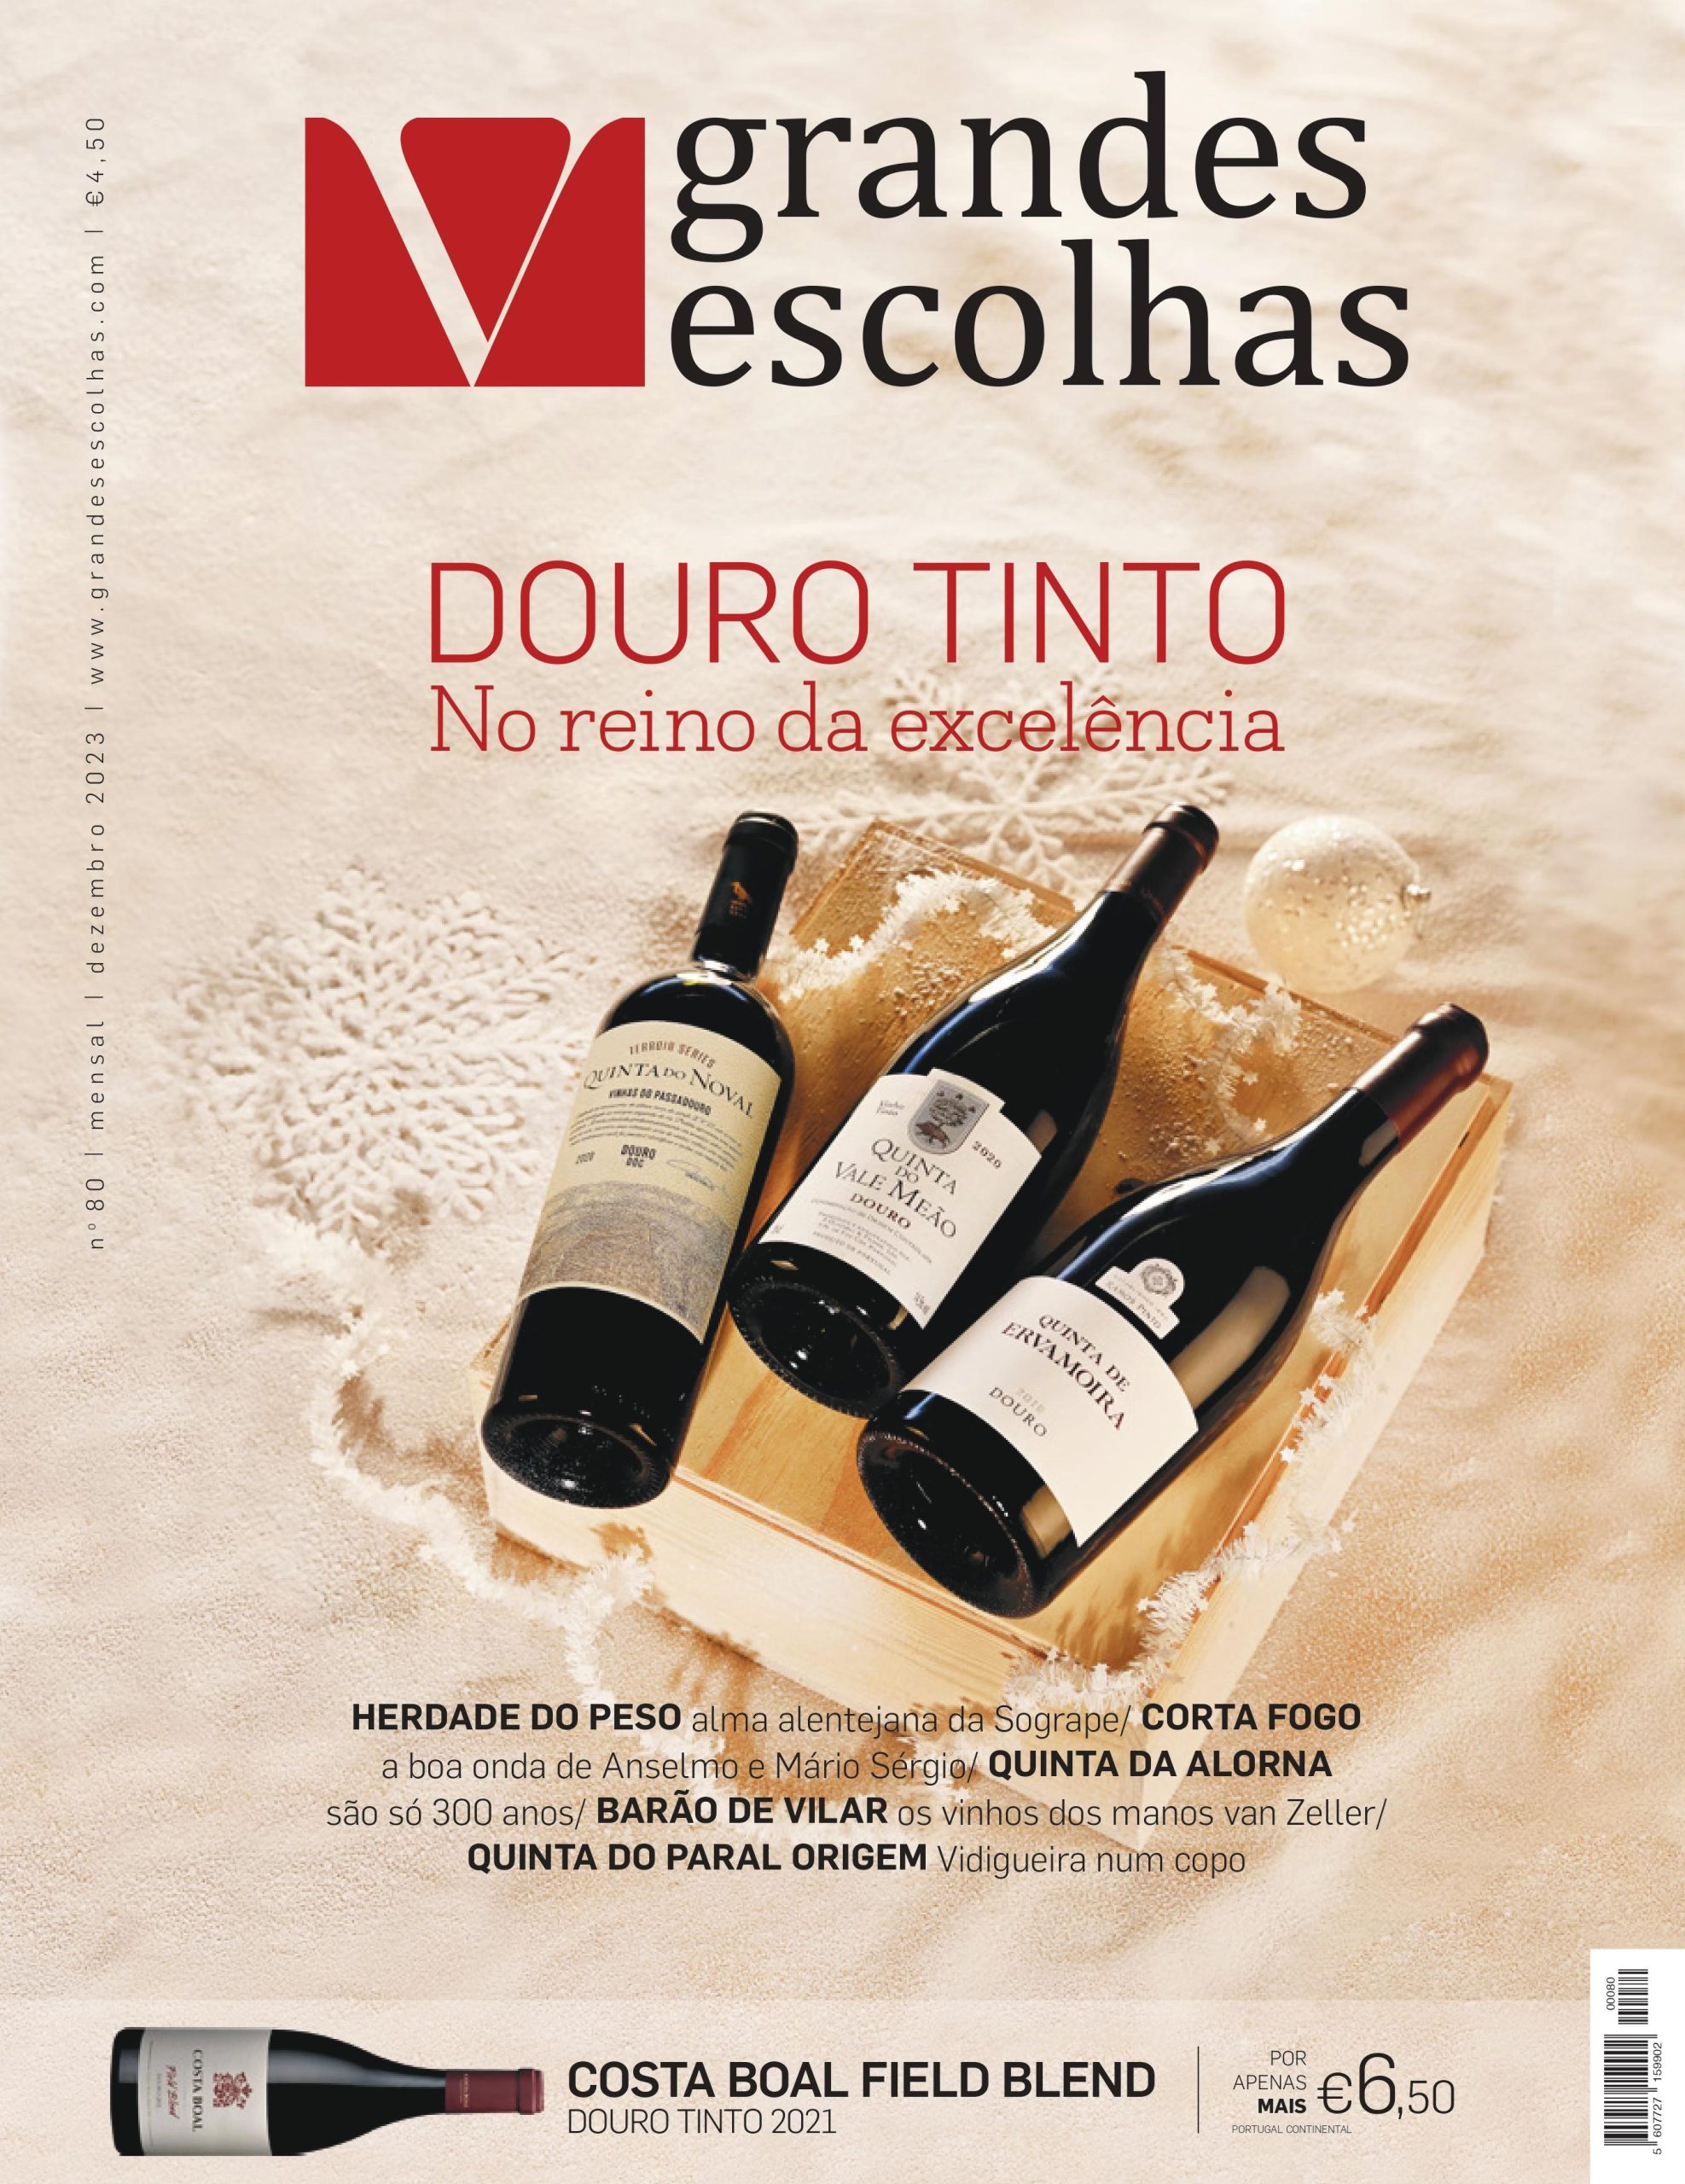 Vinho e Delicias - Sobre vinho: Especial: Jogo treinamento de Regiões e  vinhos Portugueses, é imprimir e curtir – Parte 1